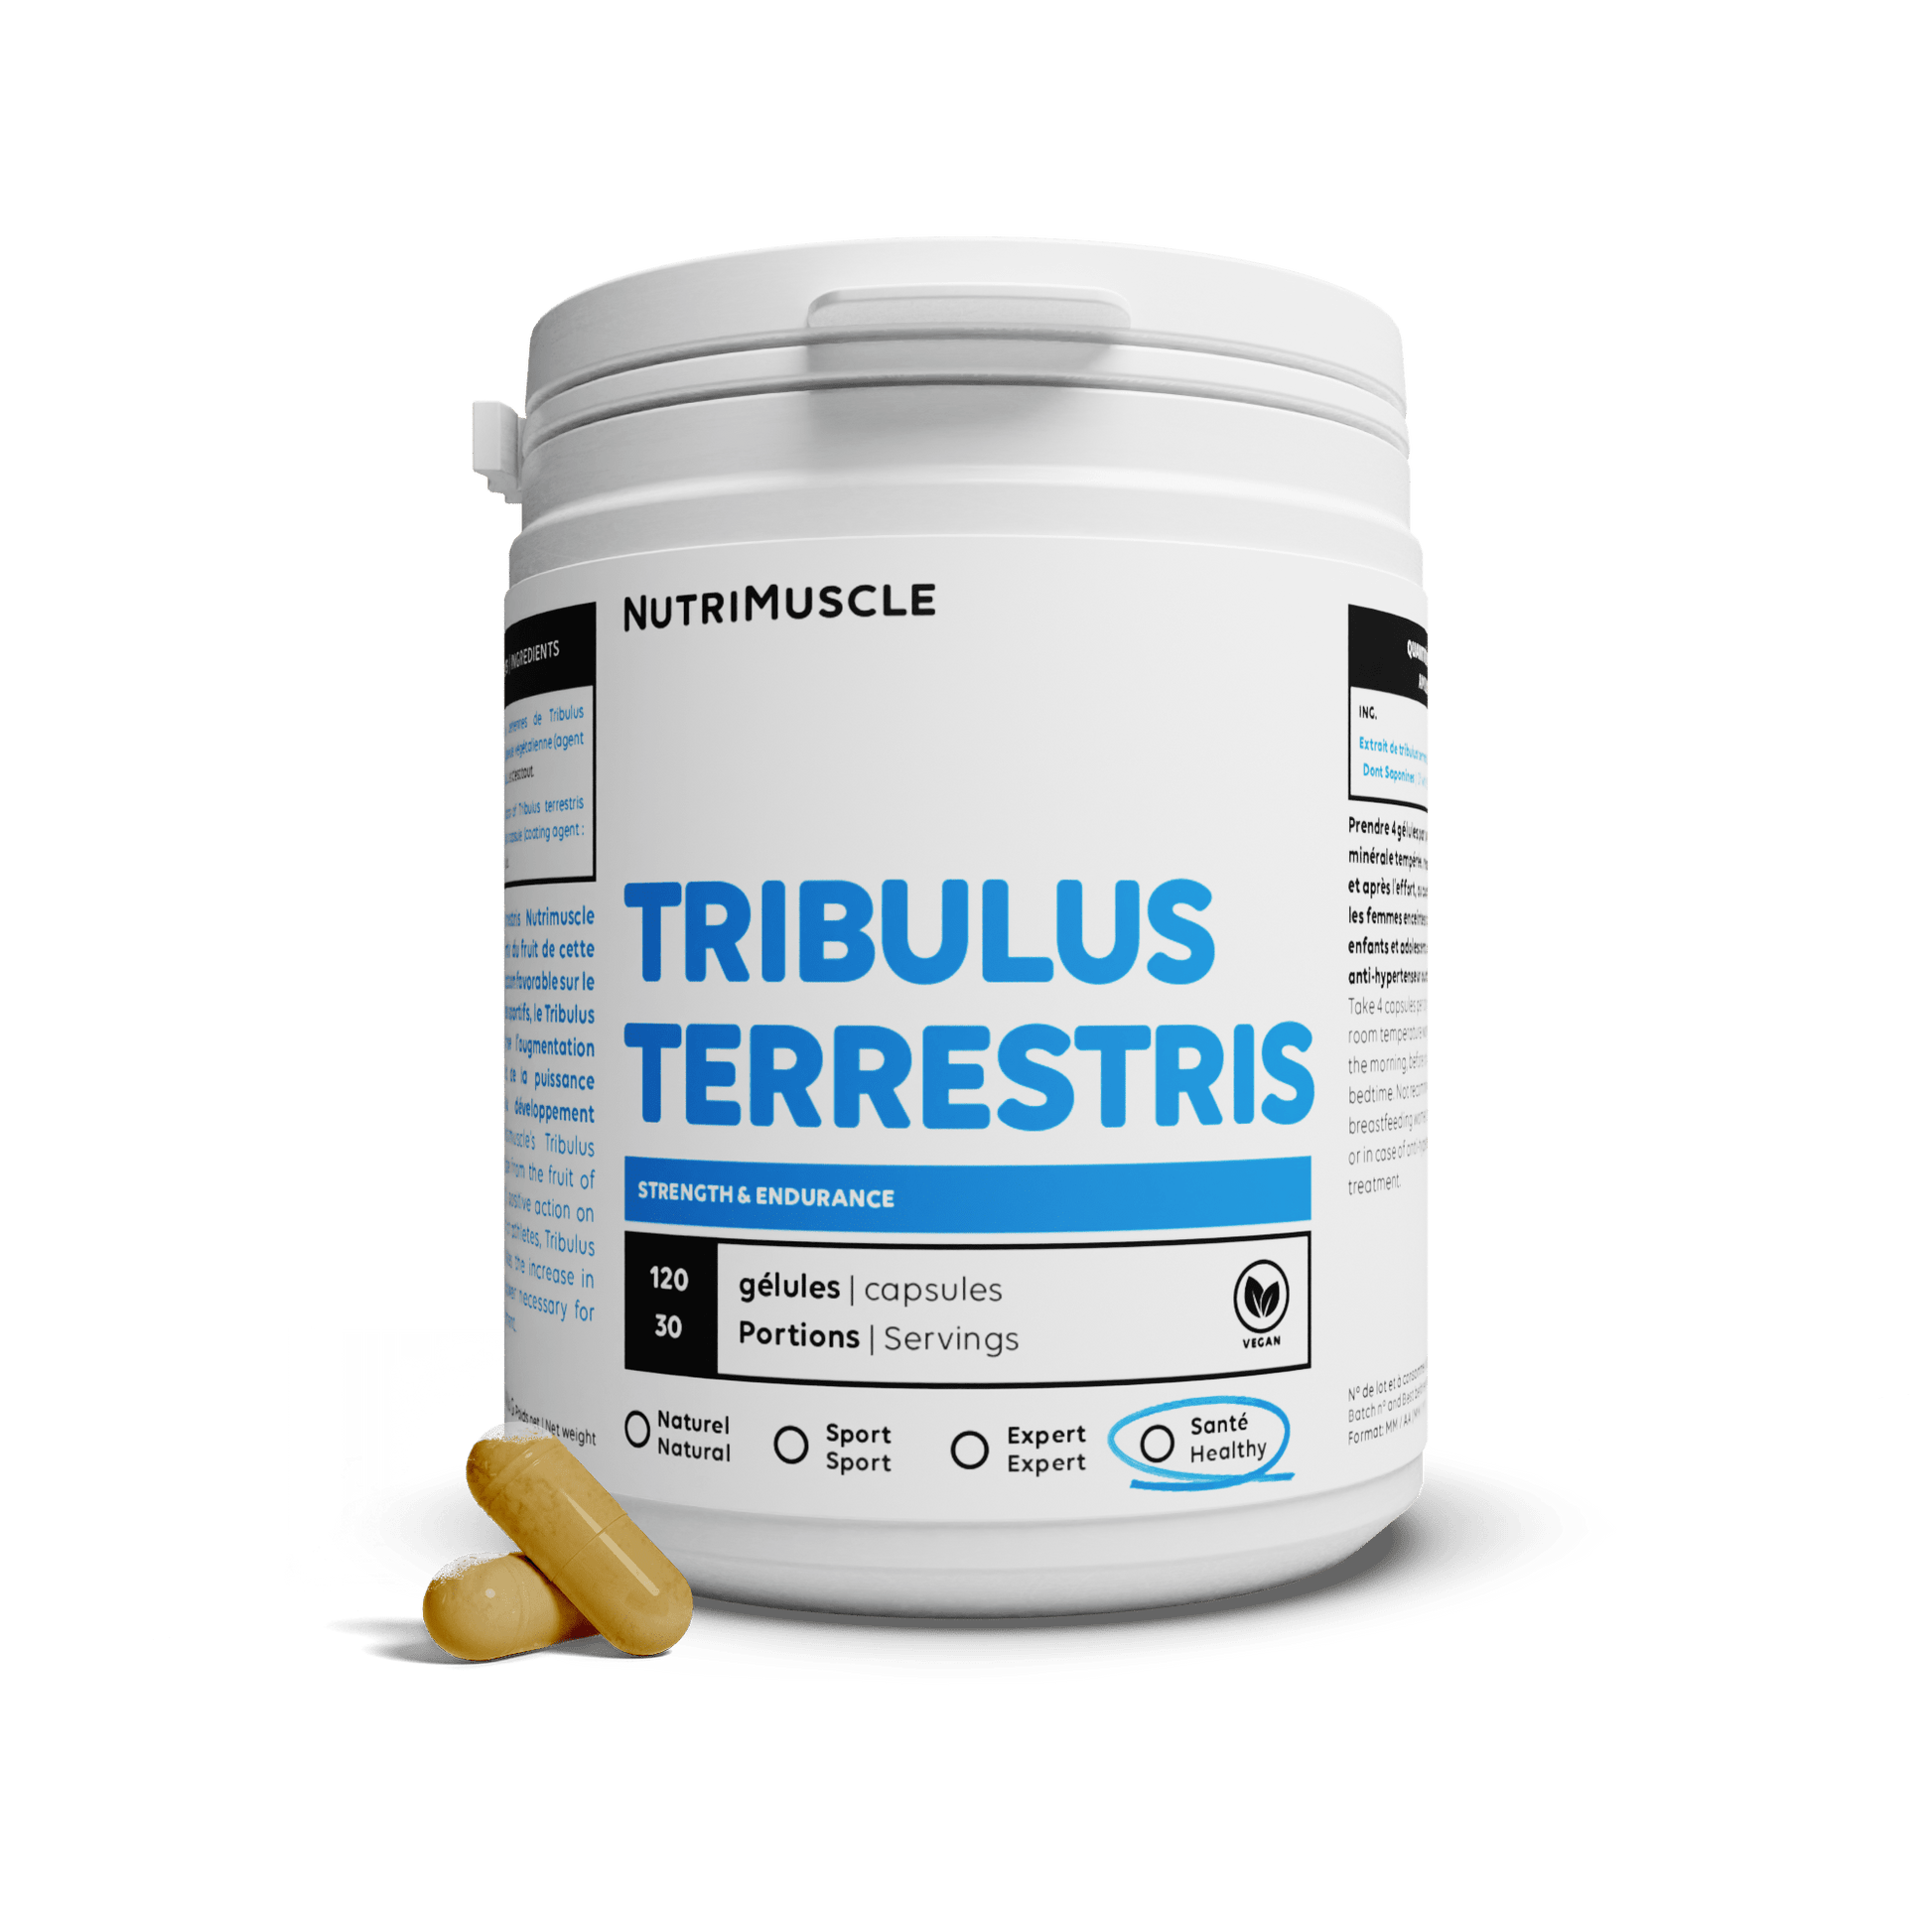 Nutrimuscle 120 gélules Tribulus Terrestris